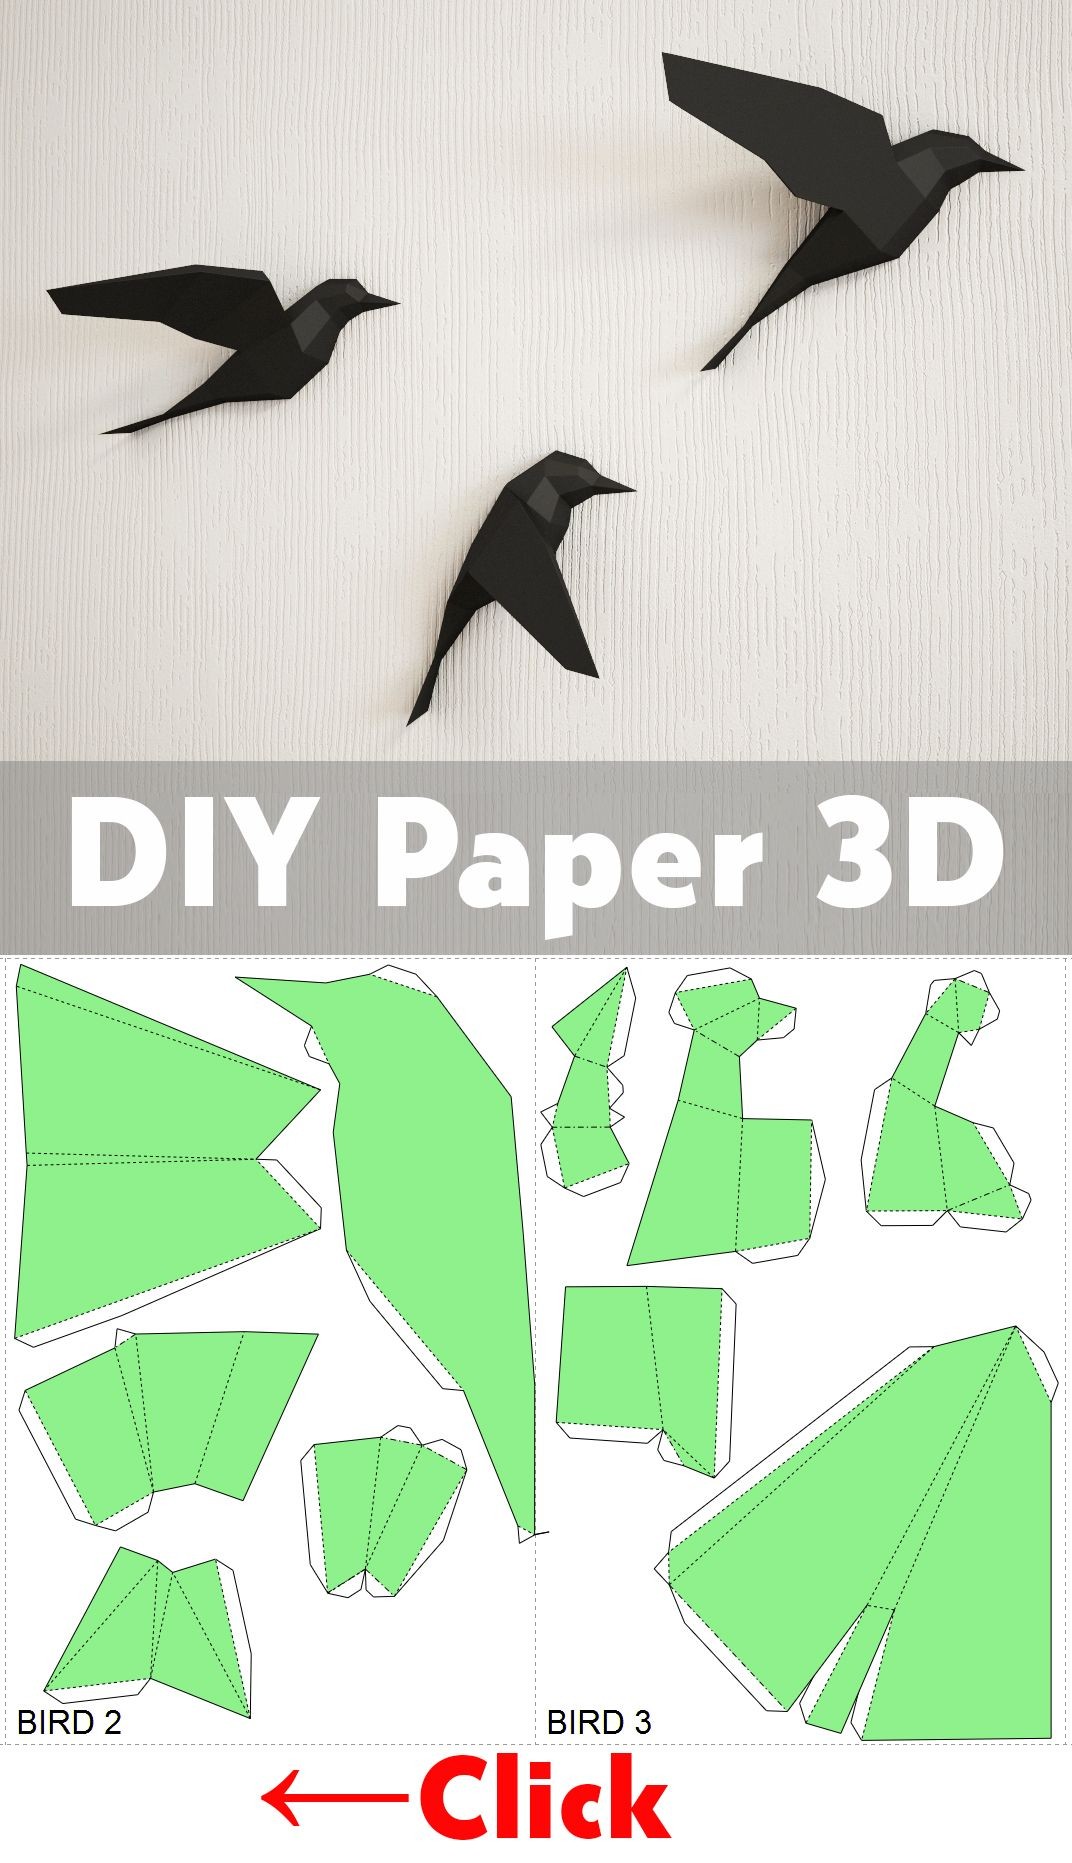 Papercraft Bird Diy Paper Birds On Wall 3d Papercraft Easy Paper Model Sculpture